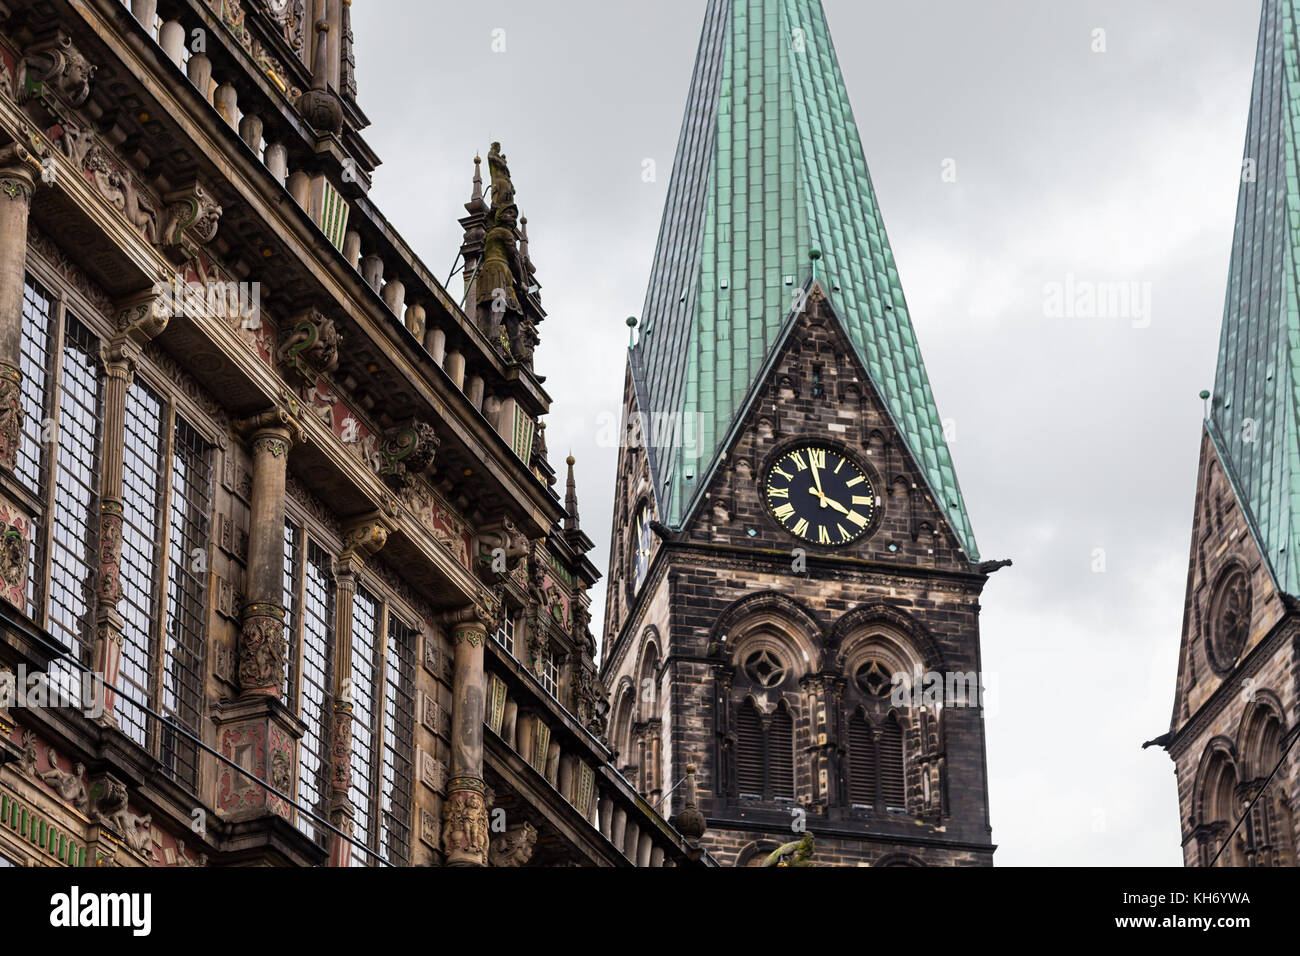 Voyage vers l'Allemagne - Hôtel de Ville façade et tour de la cathédrale de Brême, en septembre Banque D'Images